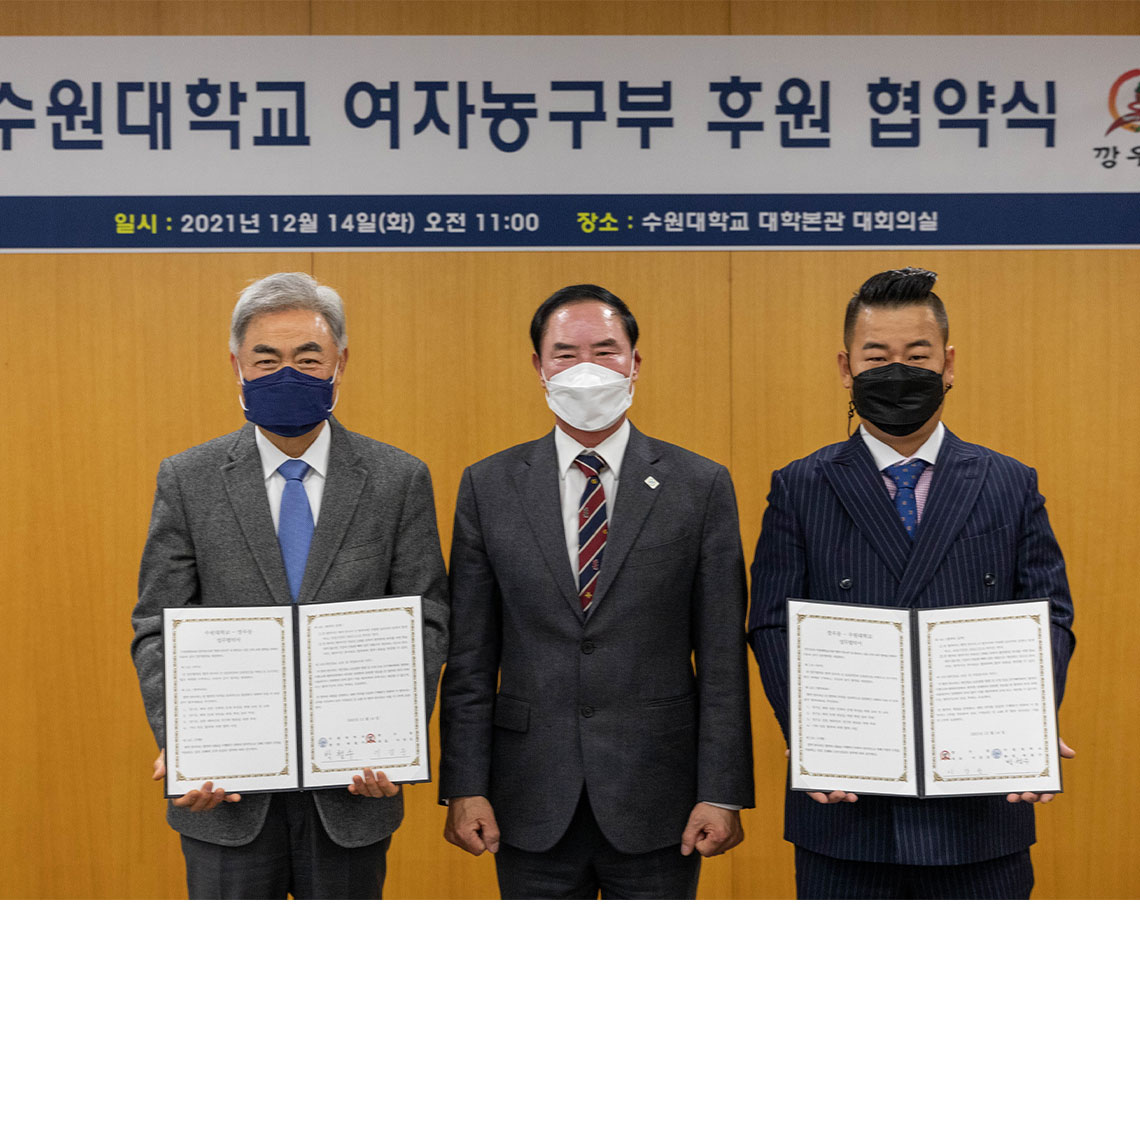 경기도체육회·깡우동과 여자농구부 후원 협약식 개최